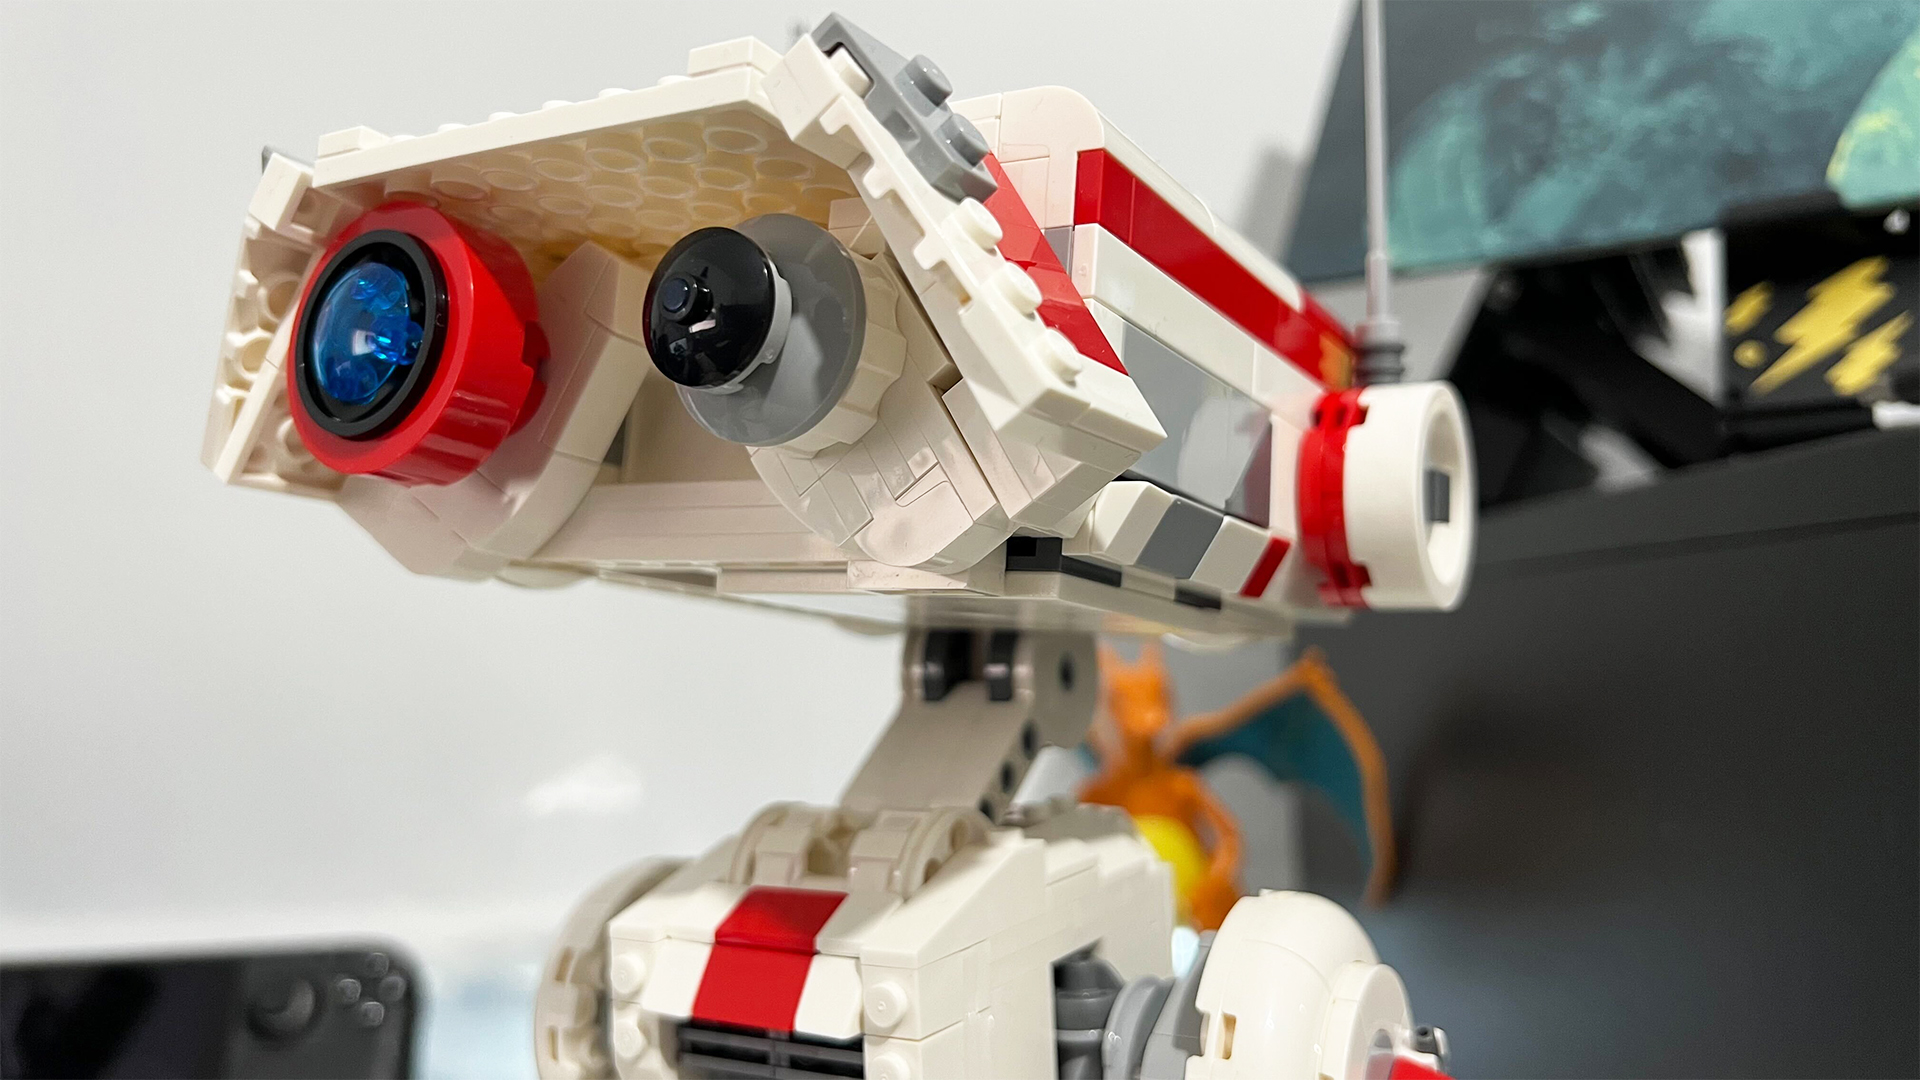 Lego Star Wars BD-1